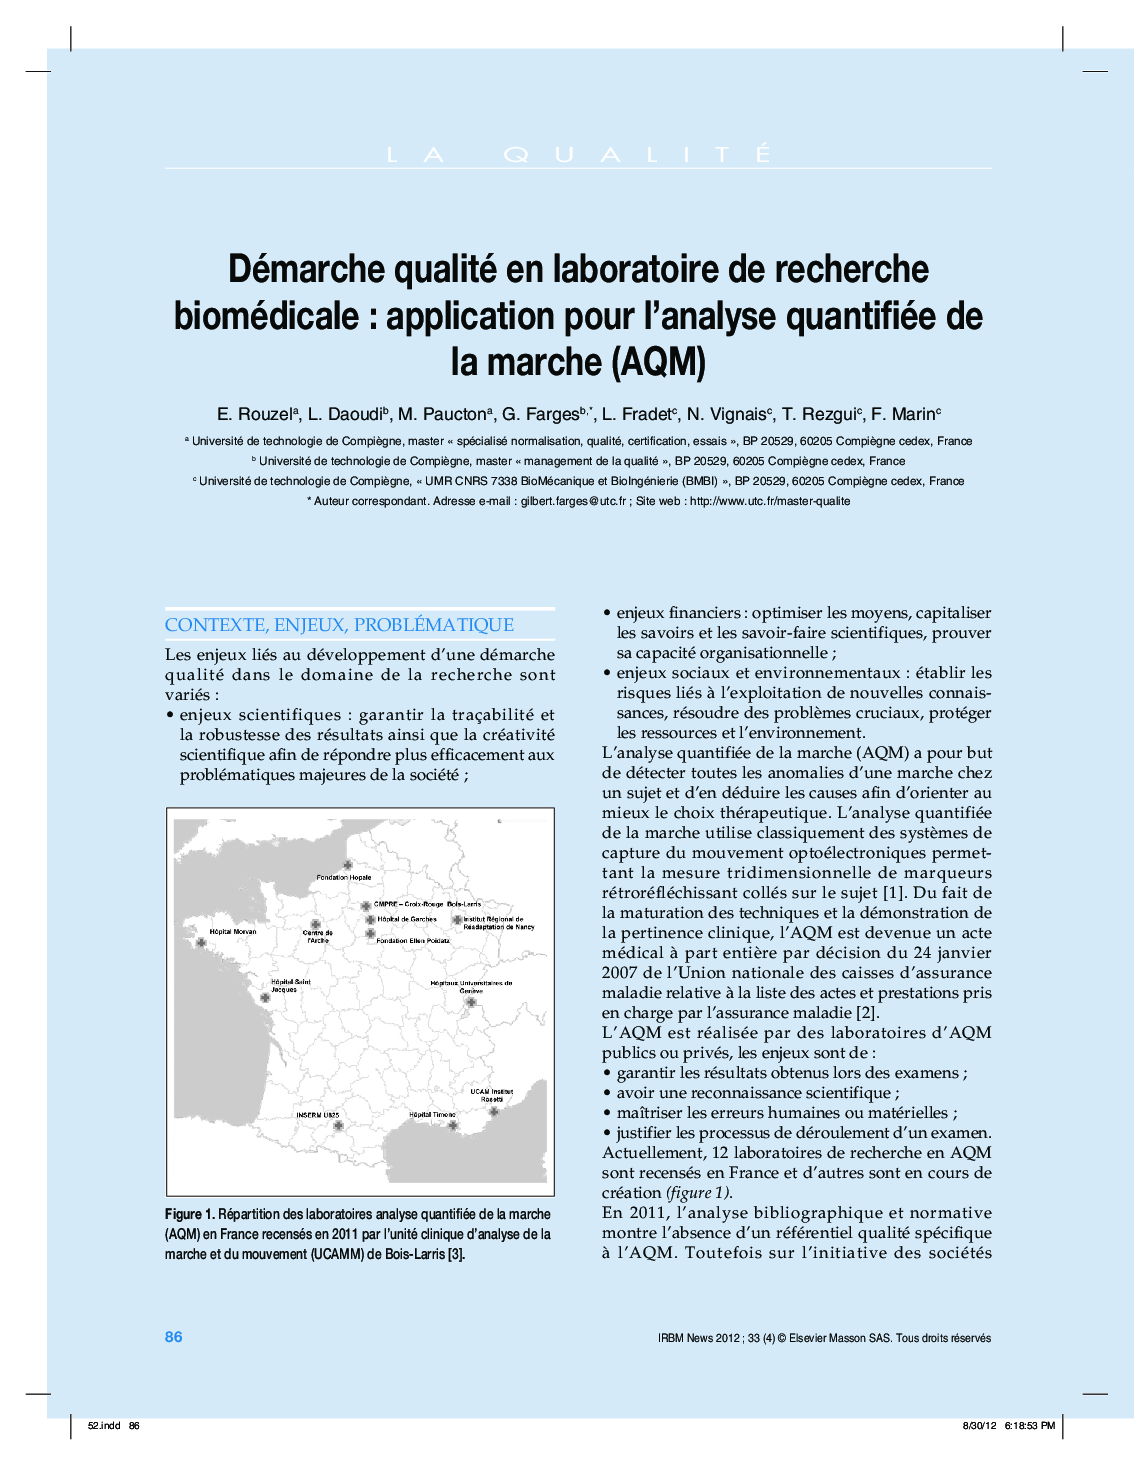 Démarche qualité en laboratoire de recherche biomédicaleÂ : application pour l'analyse quantifiée de la marche (AQM)